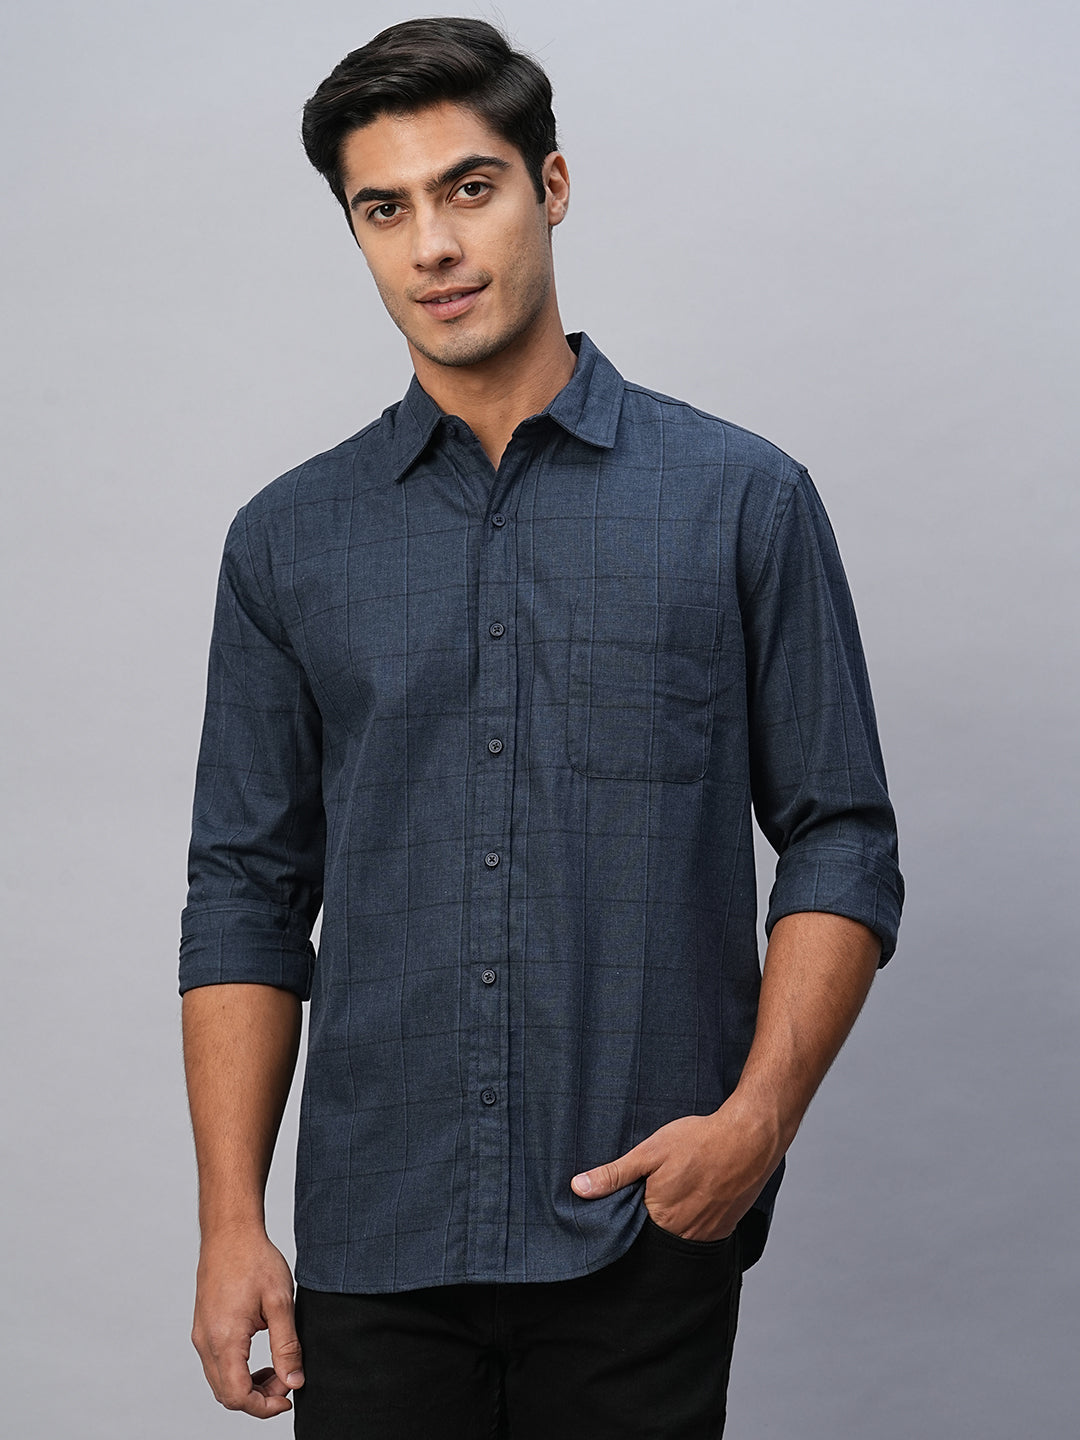 Men's Navy Cotton Regular Fit Shirt